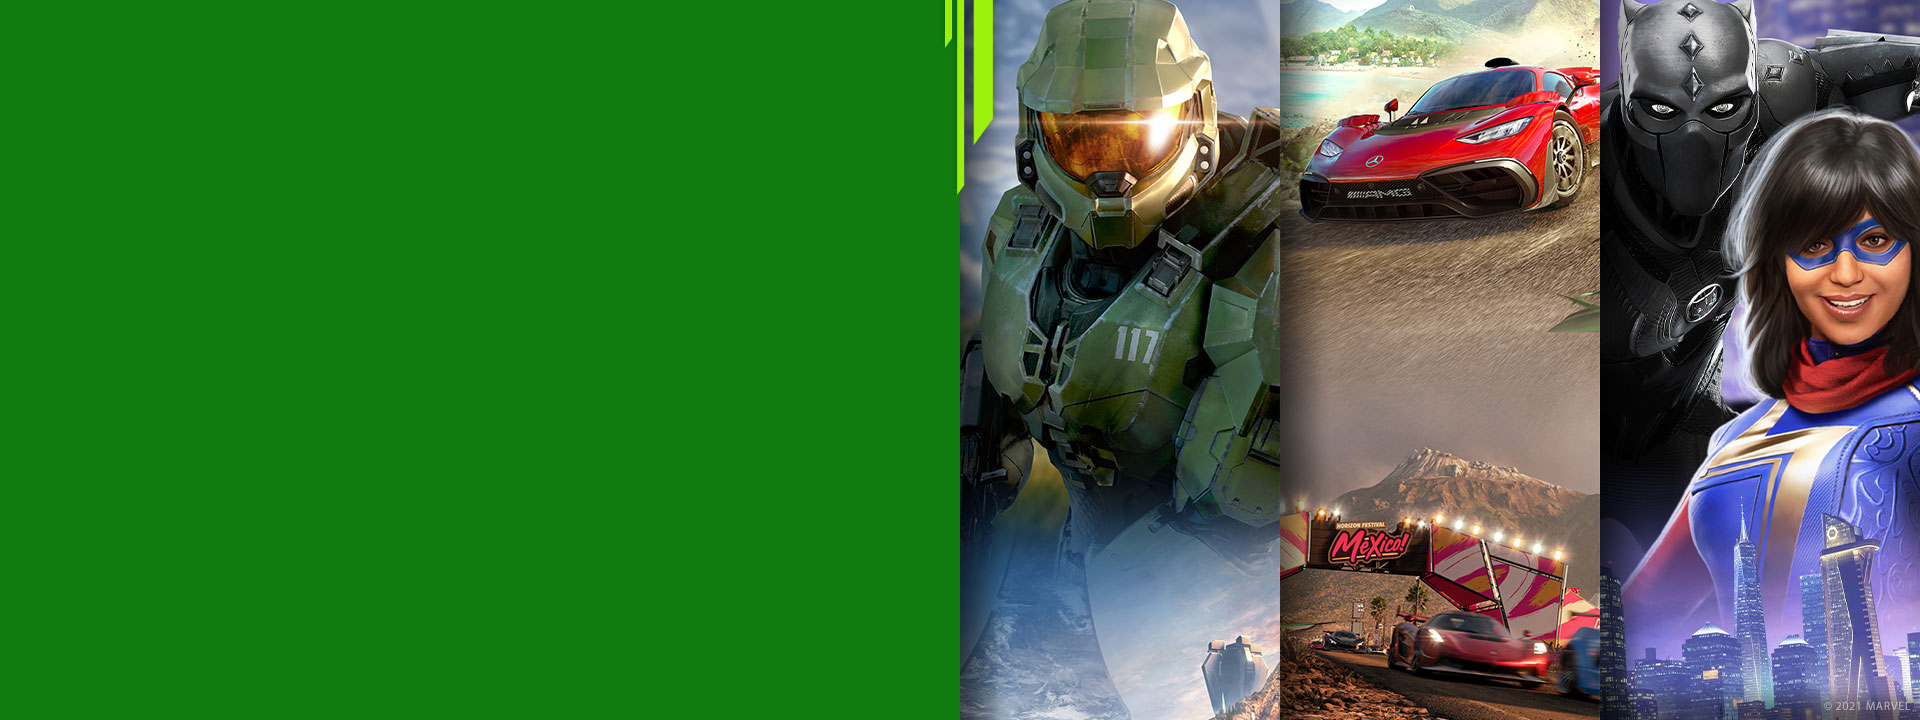 Vista frontal de diferentes personajes de juegos de Xbox de Halo Infinite, Forza Horizon 5 y Marvel's Avengers.